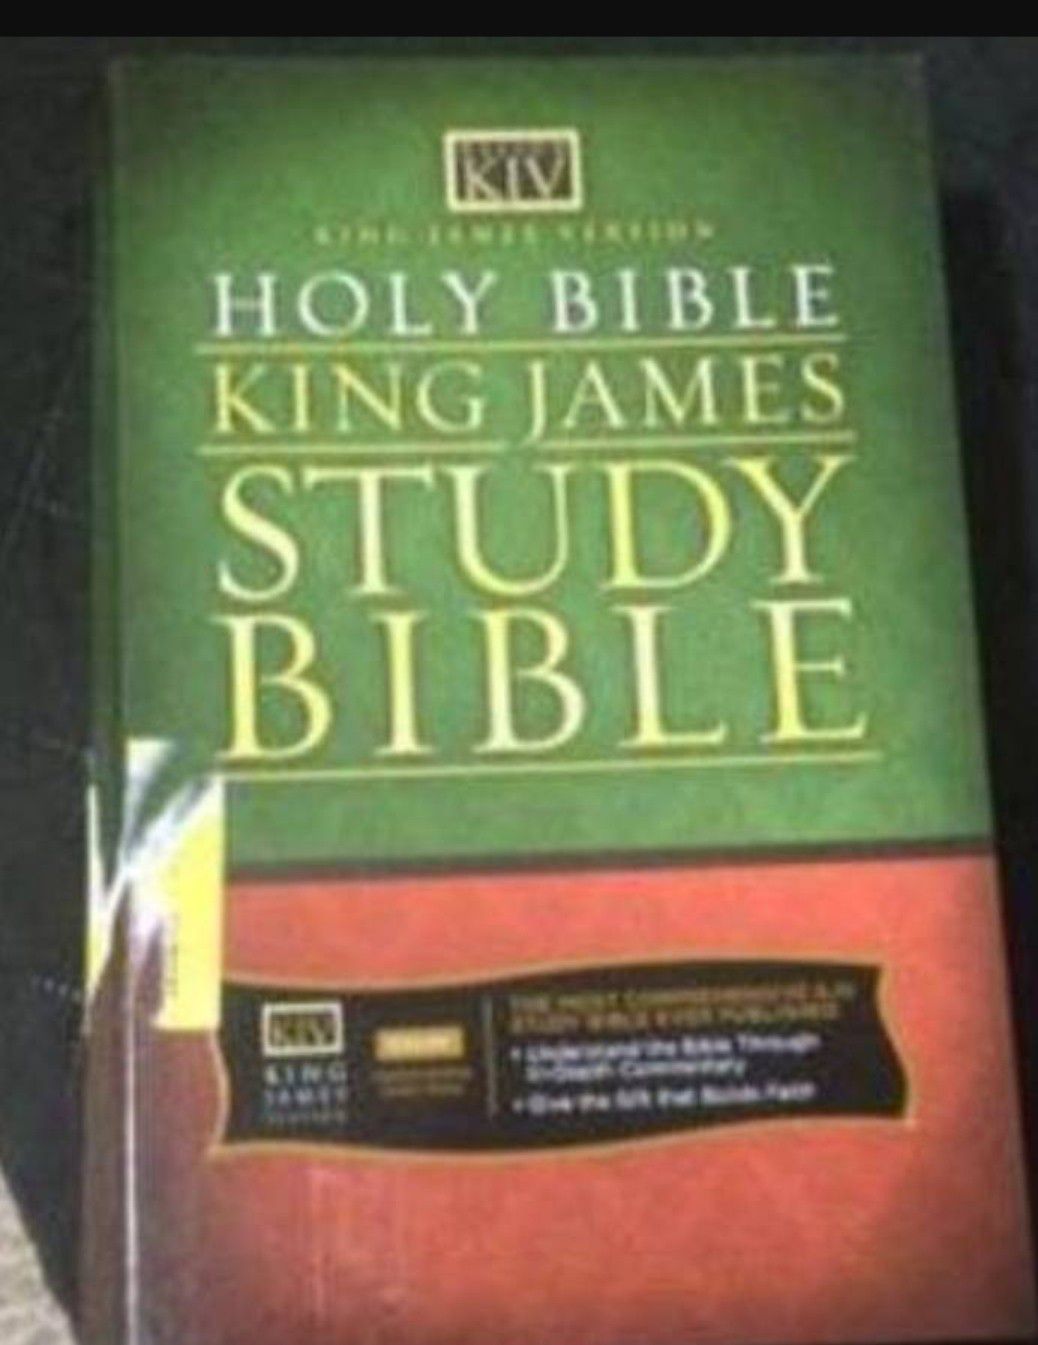 Bible King James study